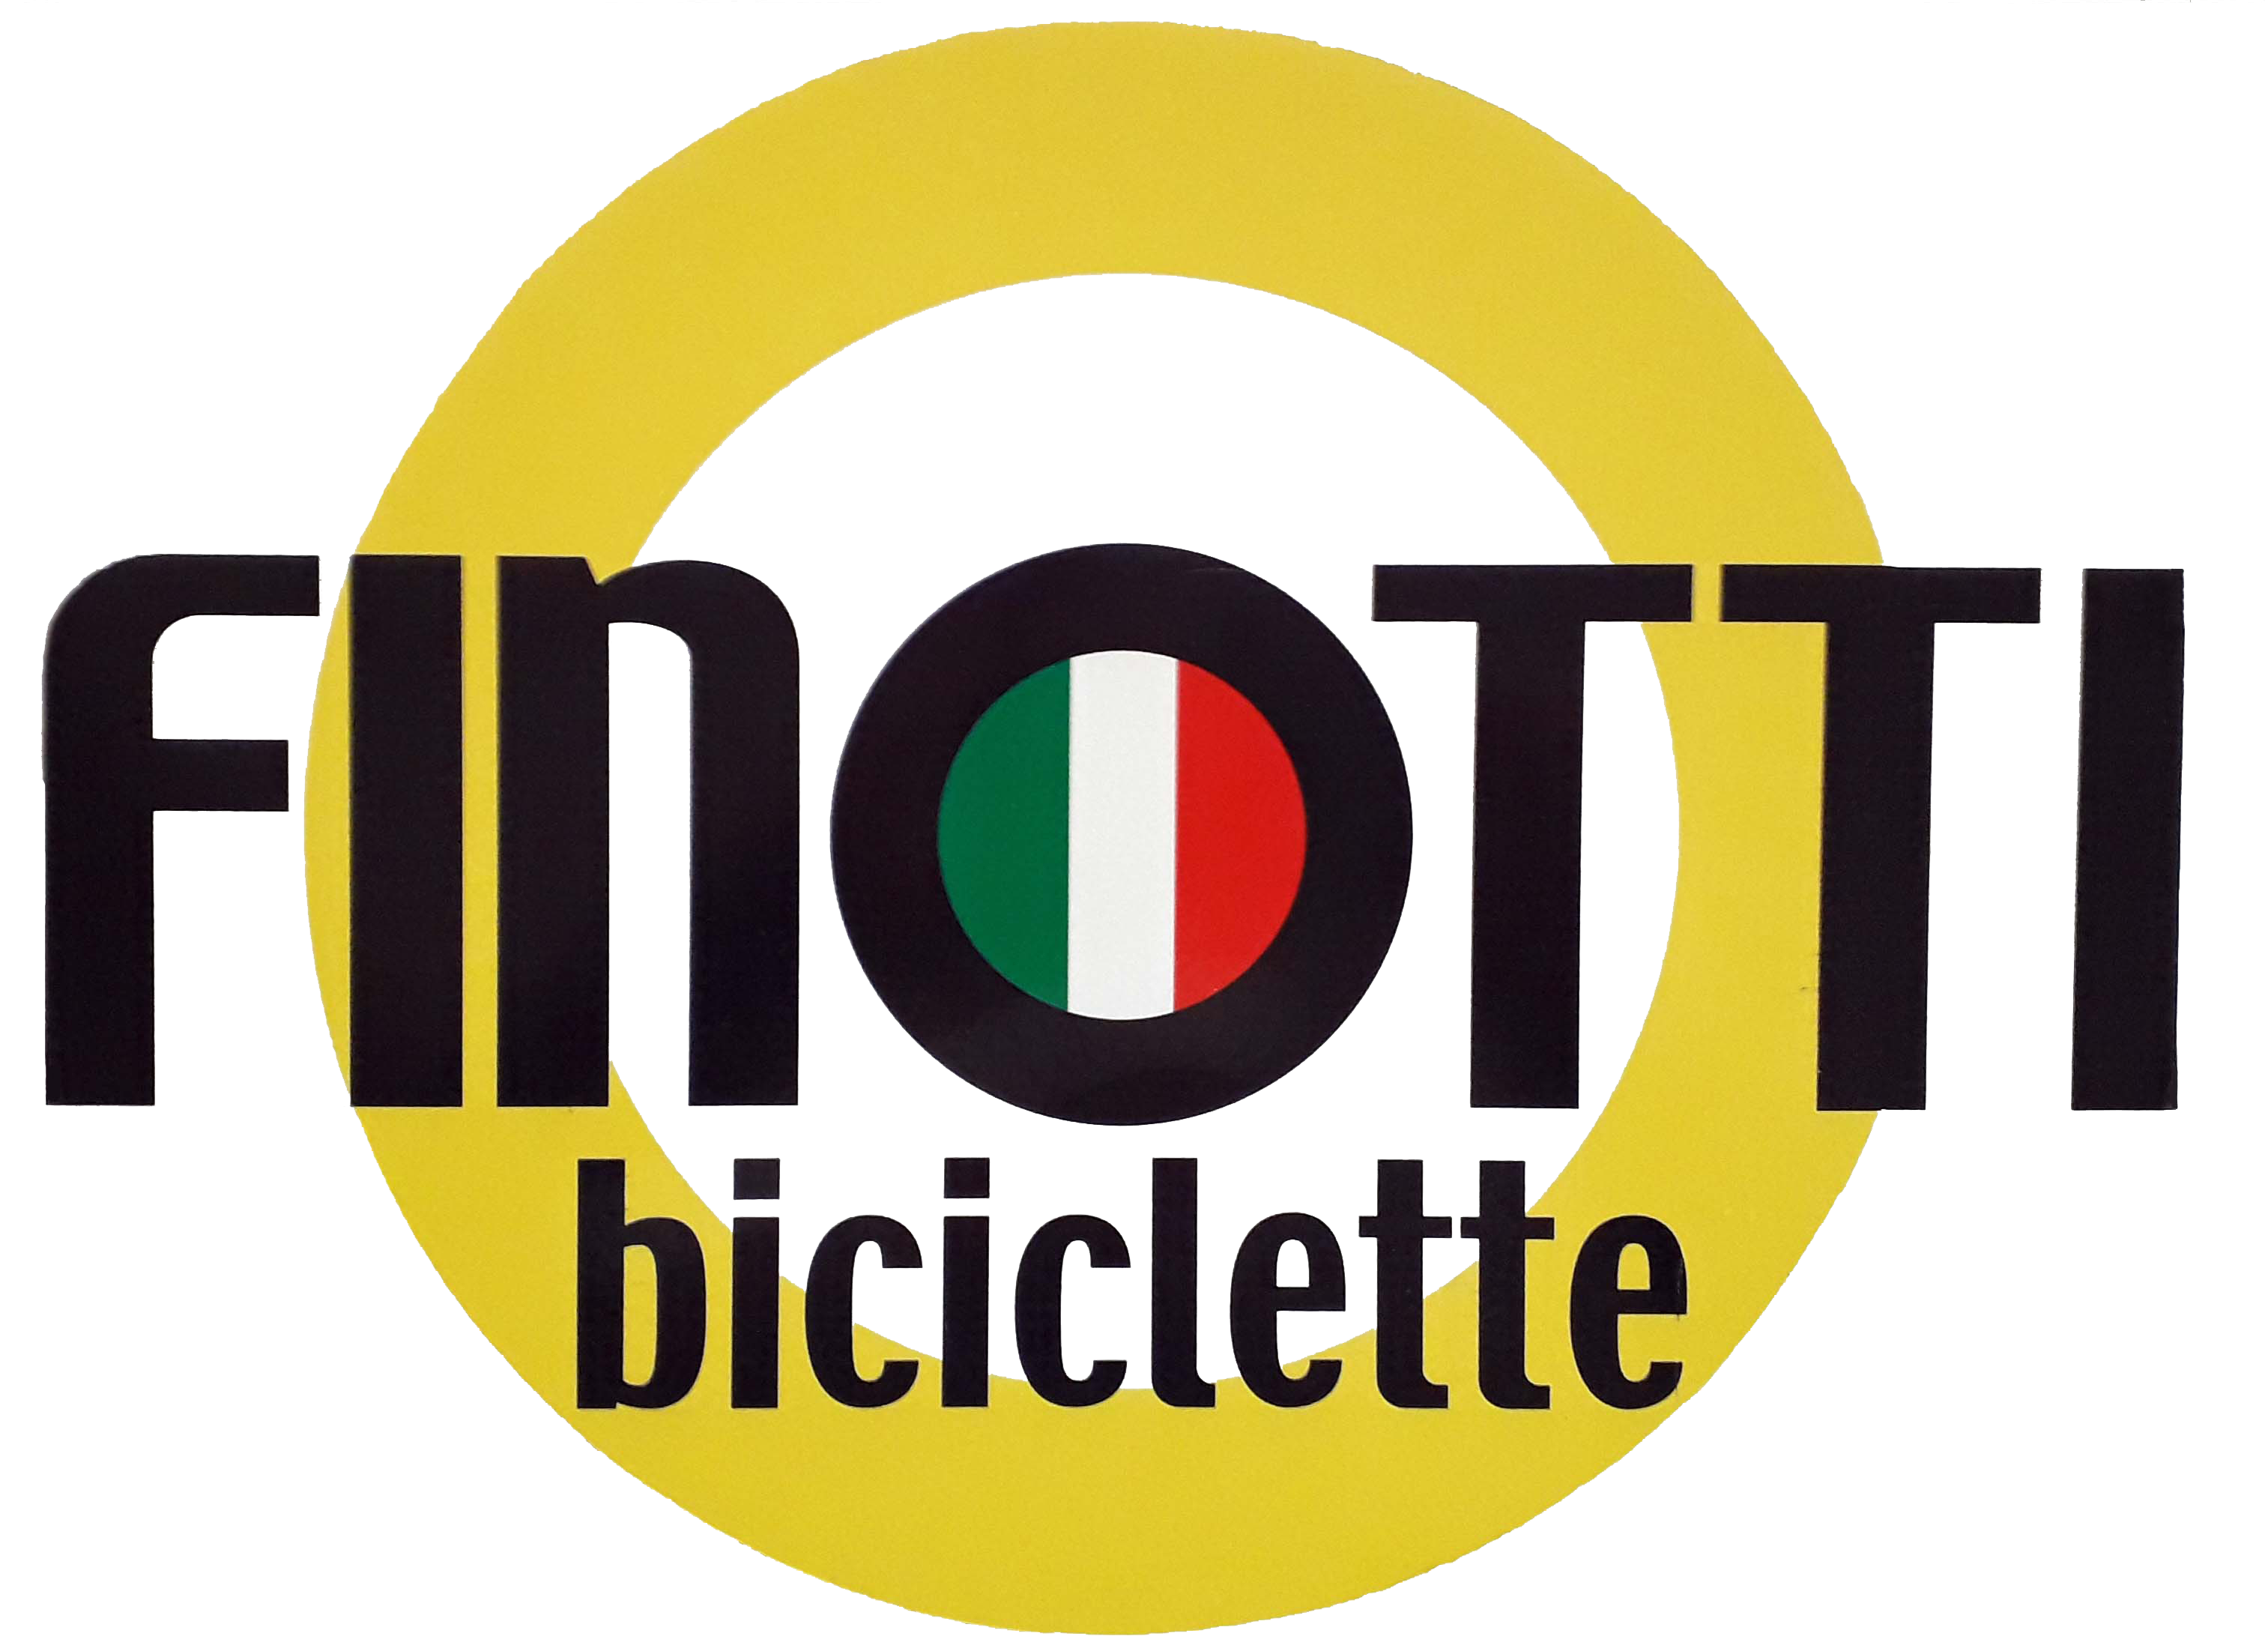 Finotti Biciclette